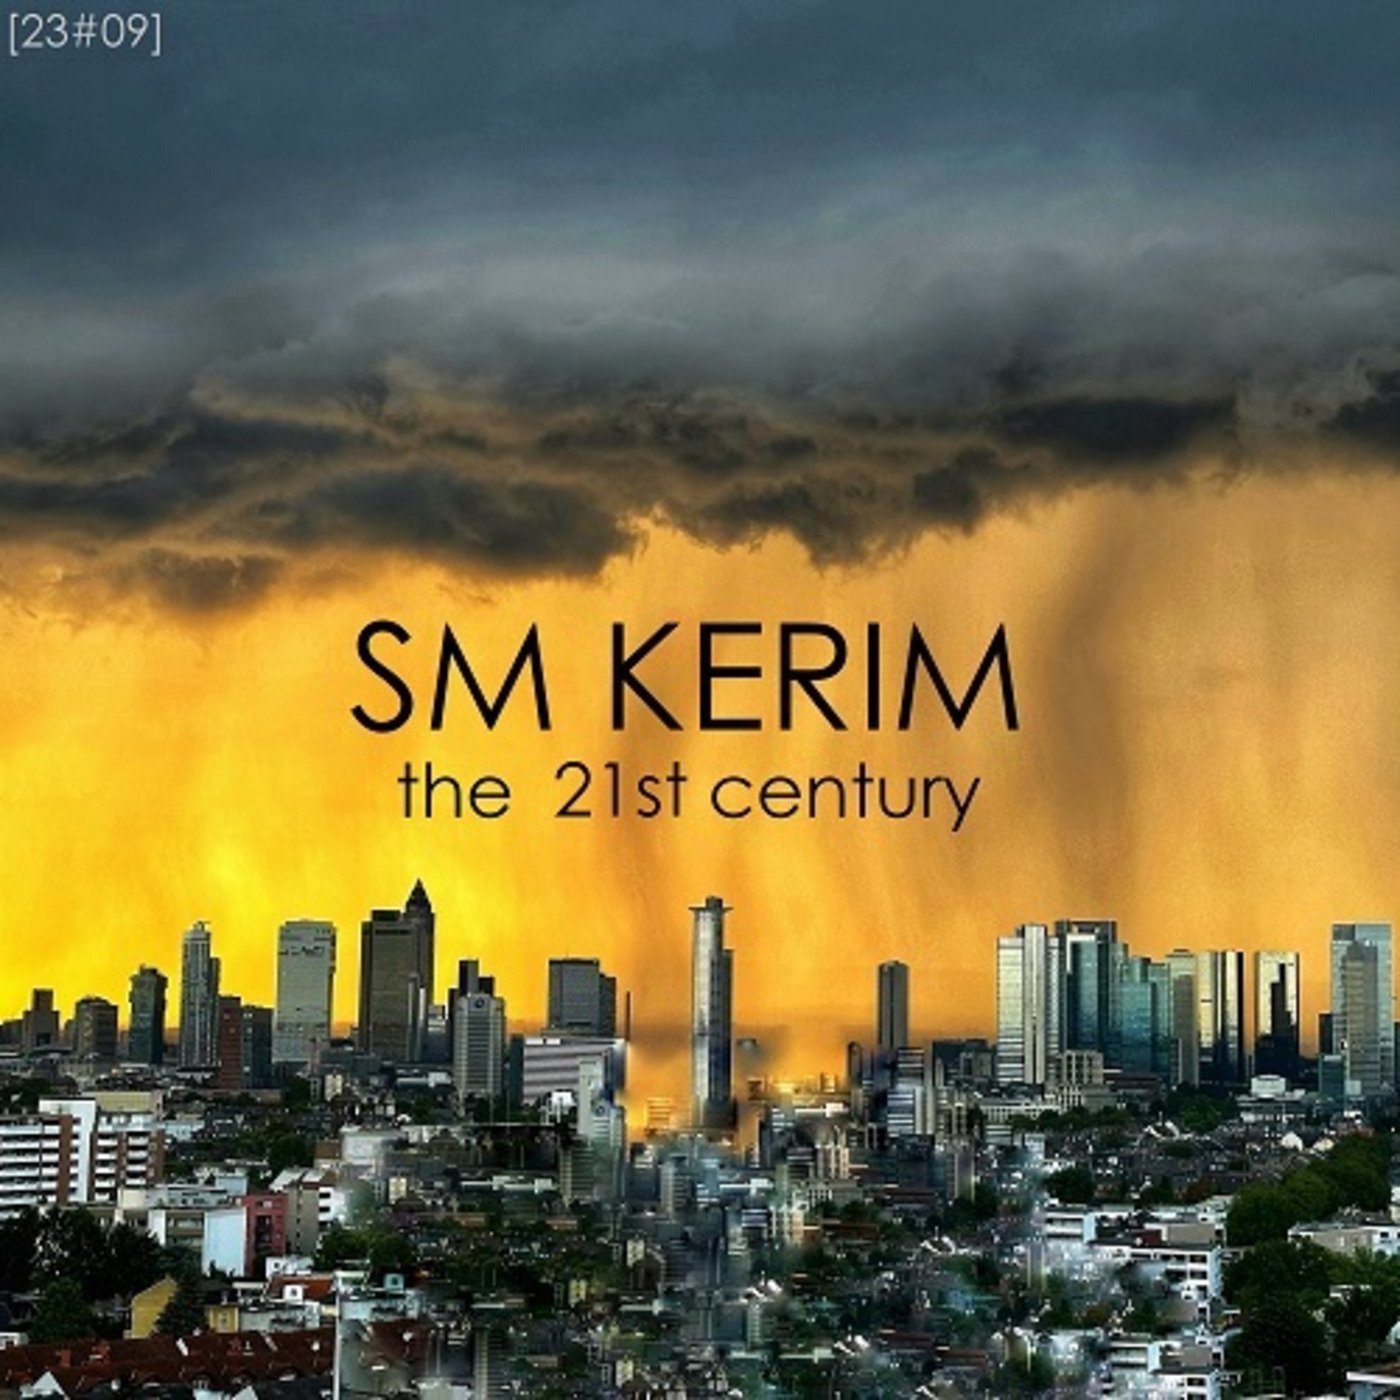 SM KERIM - The 21st Century (23#09)